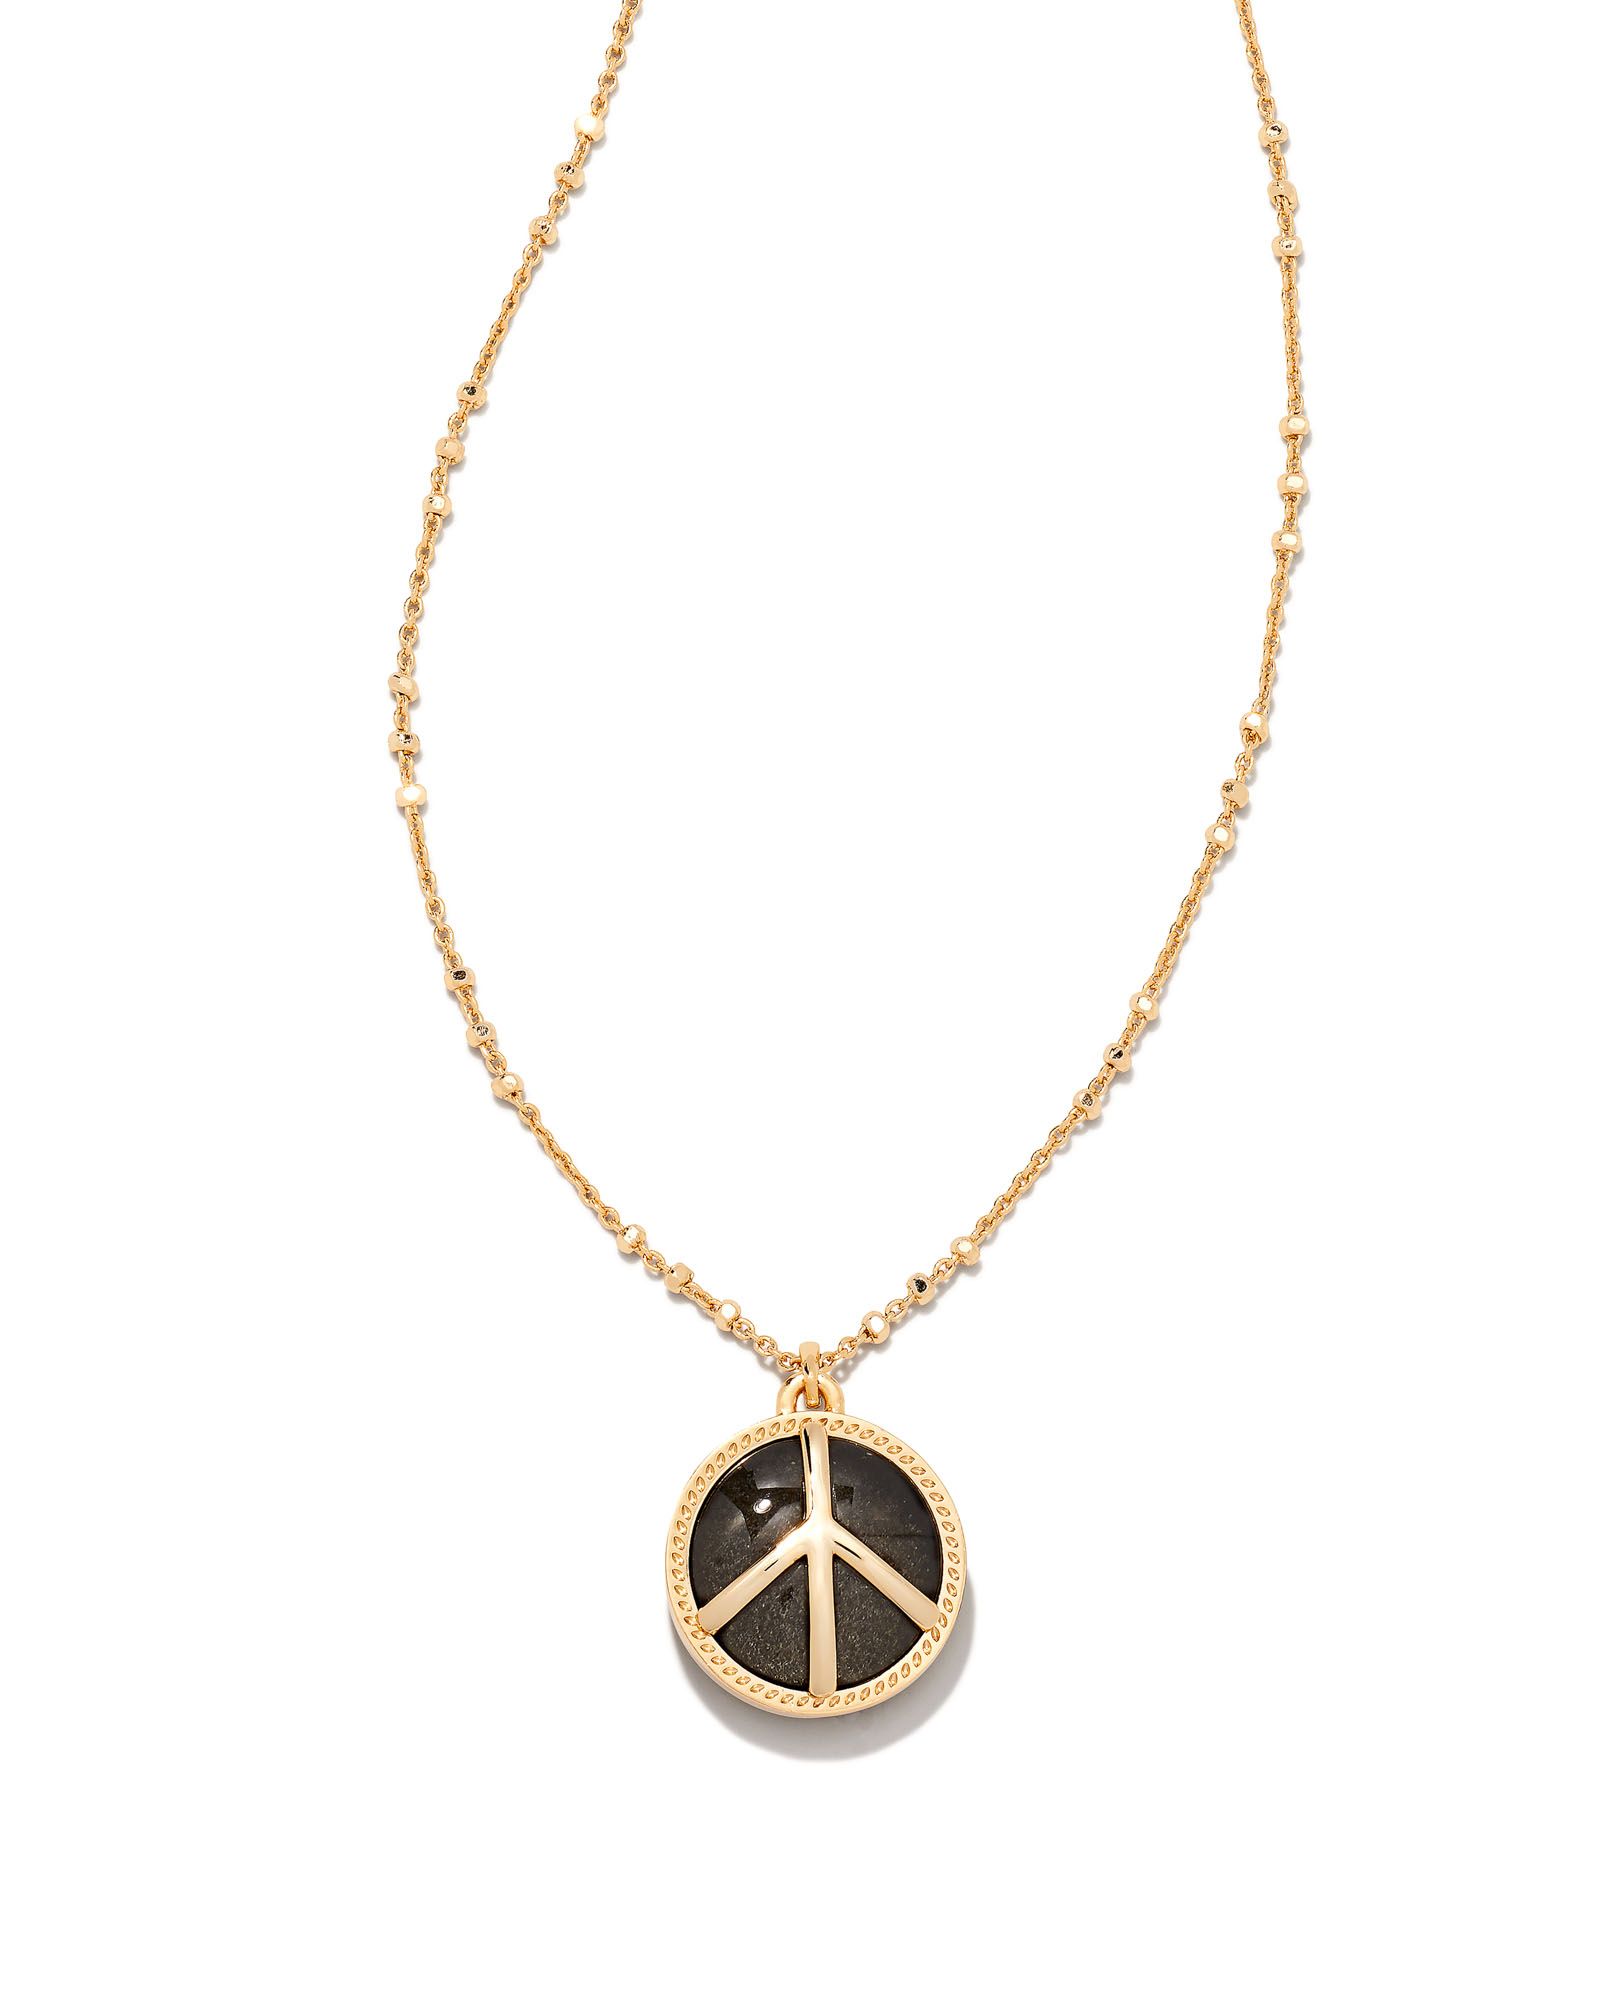 Peace Gold Pendant Necklace in Golden Obsidian | Kendra Scott | Kendra Scott